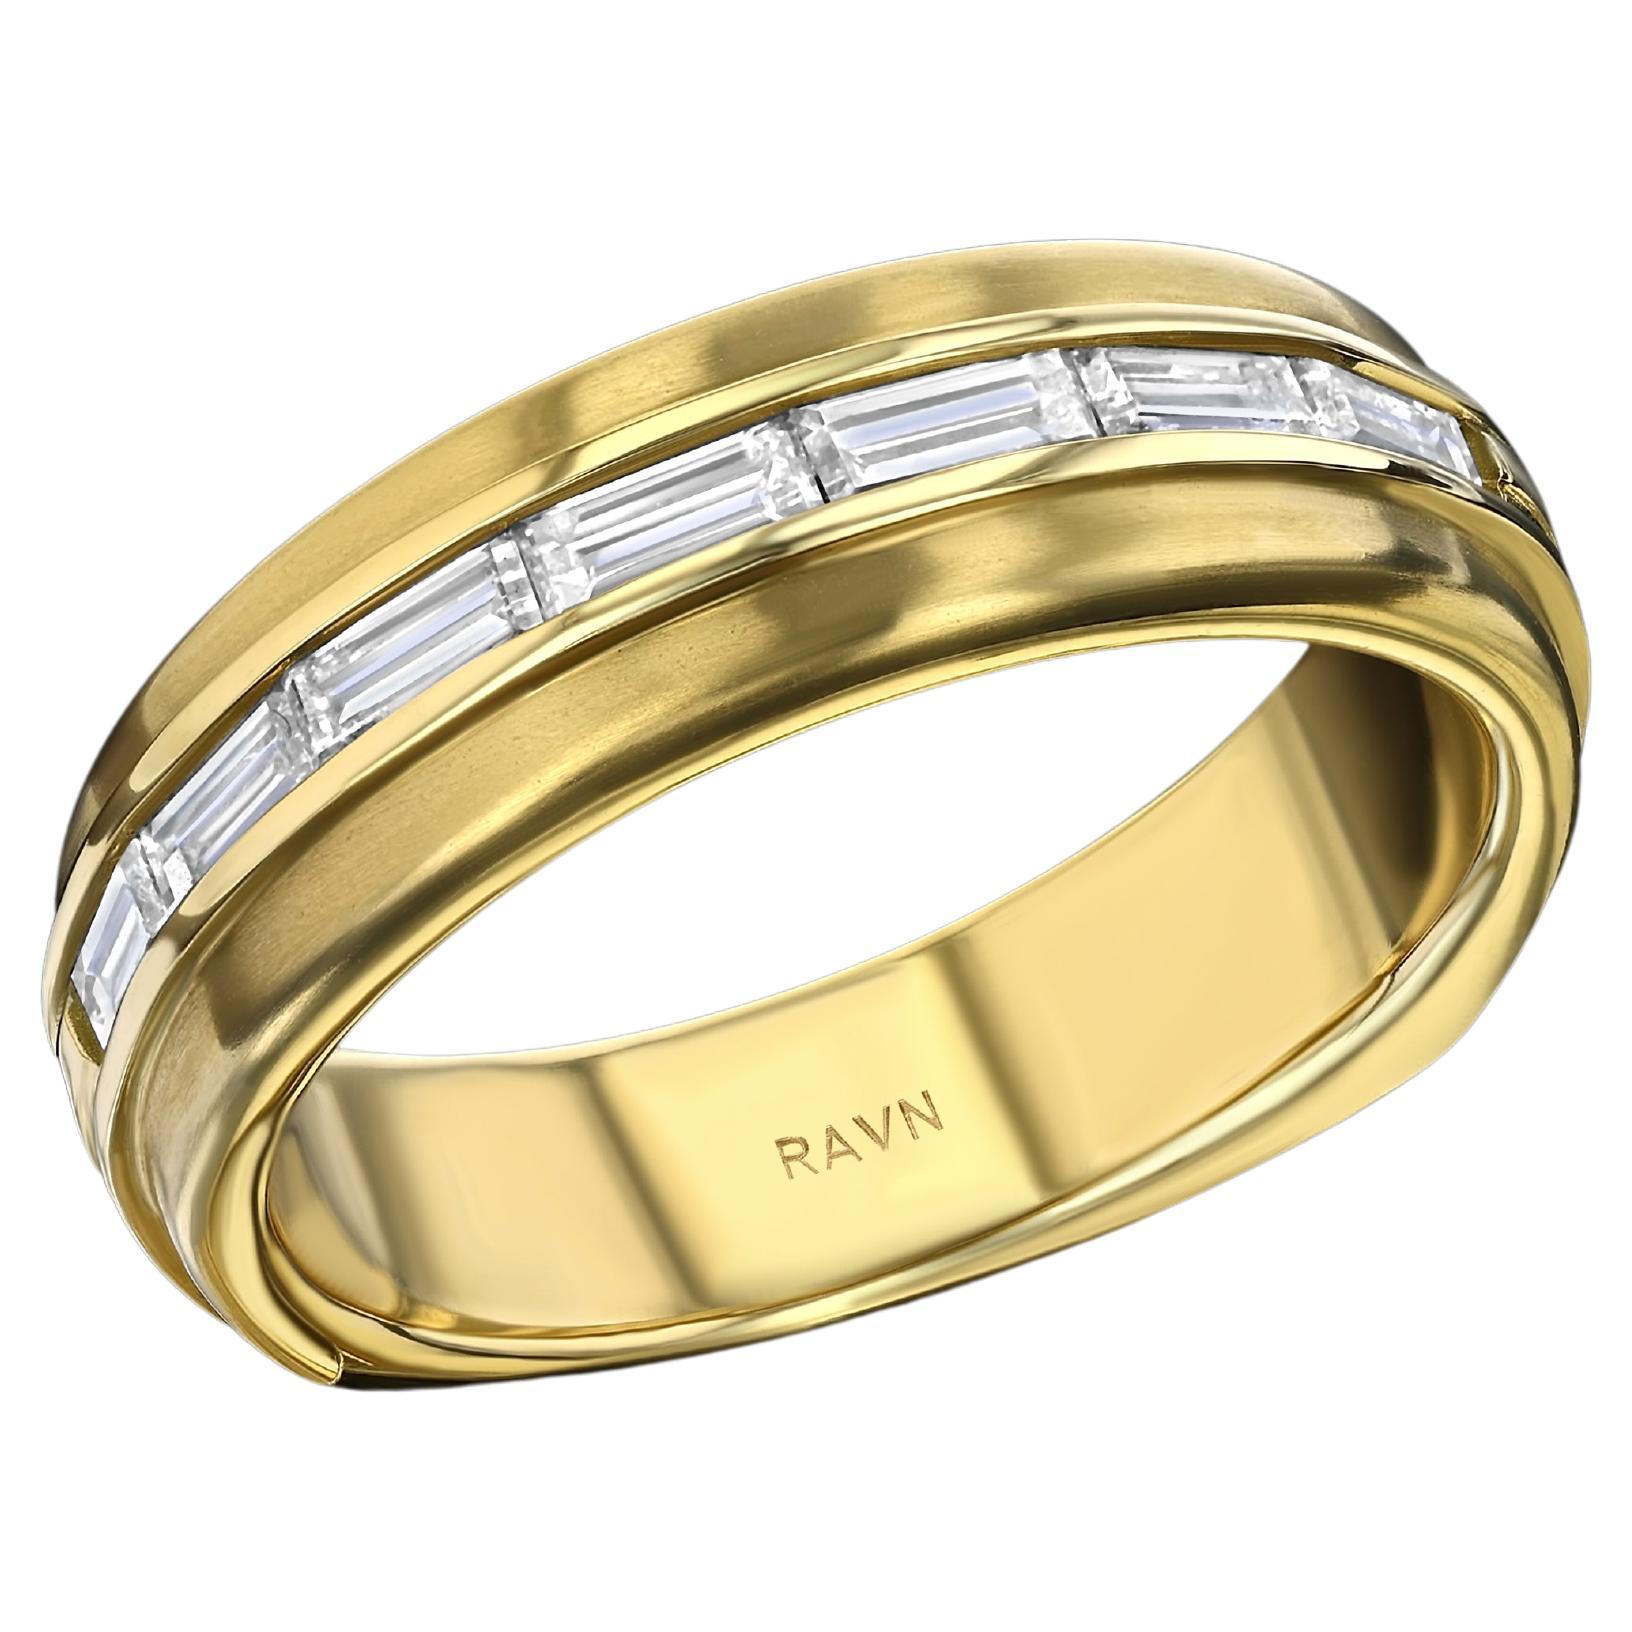 House of RAVN, bracelet euro pour homme en or jaune 18 carats, avec 7 diamants baguette